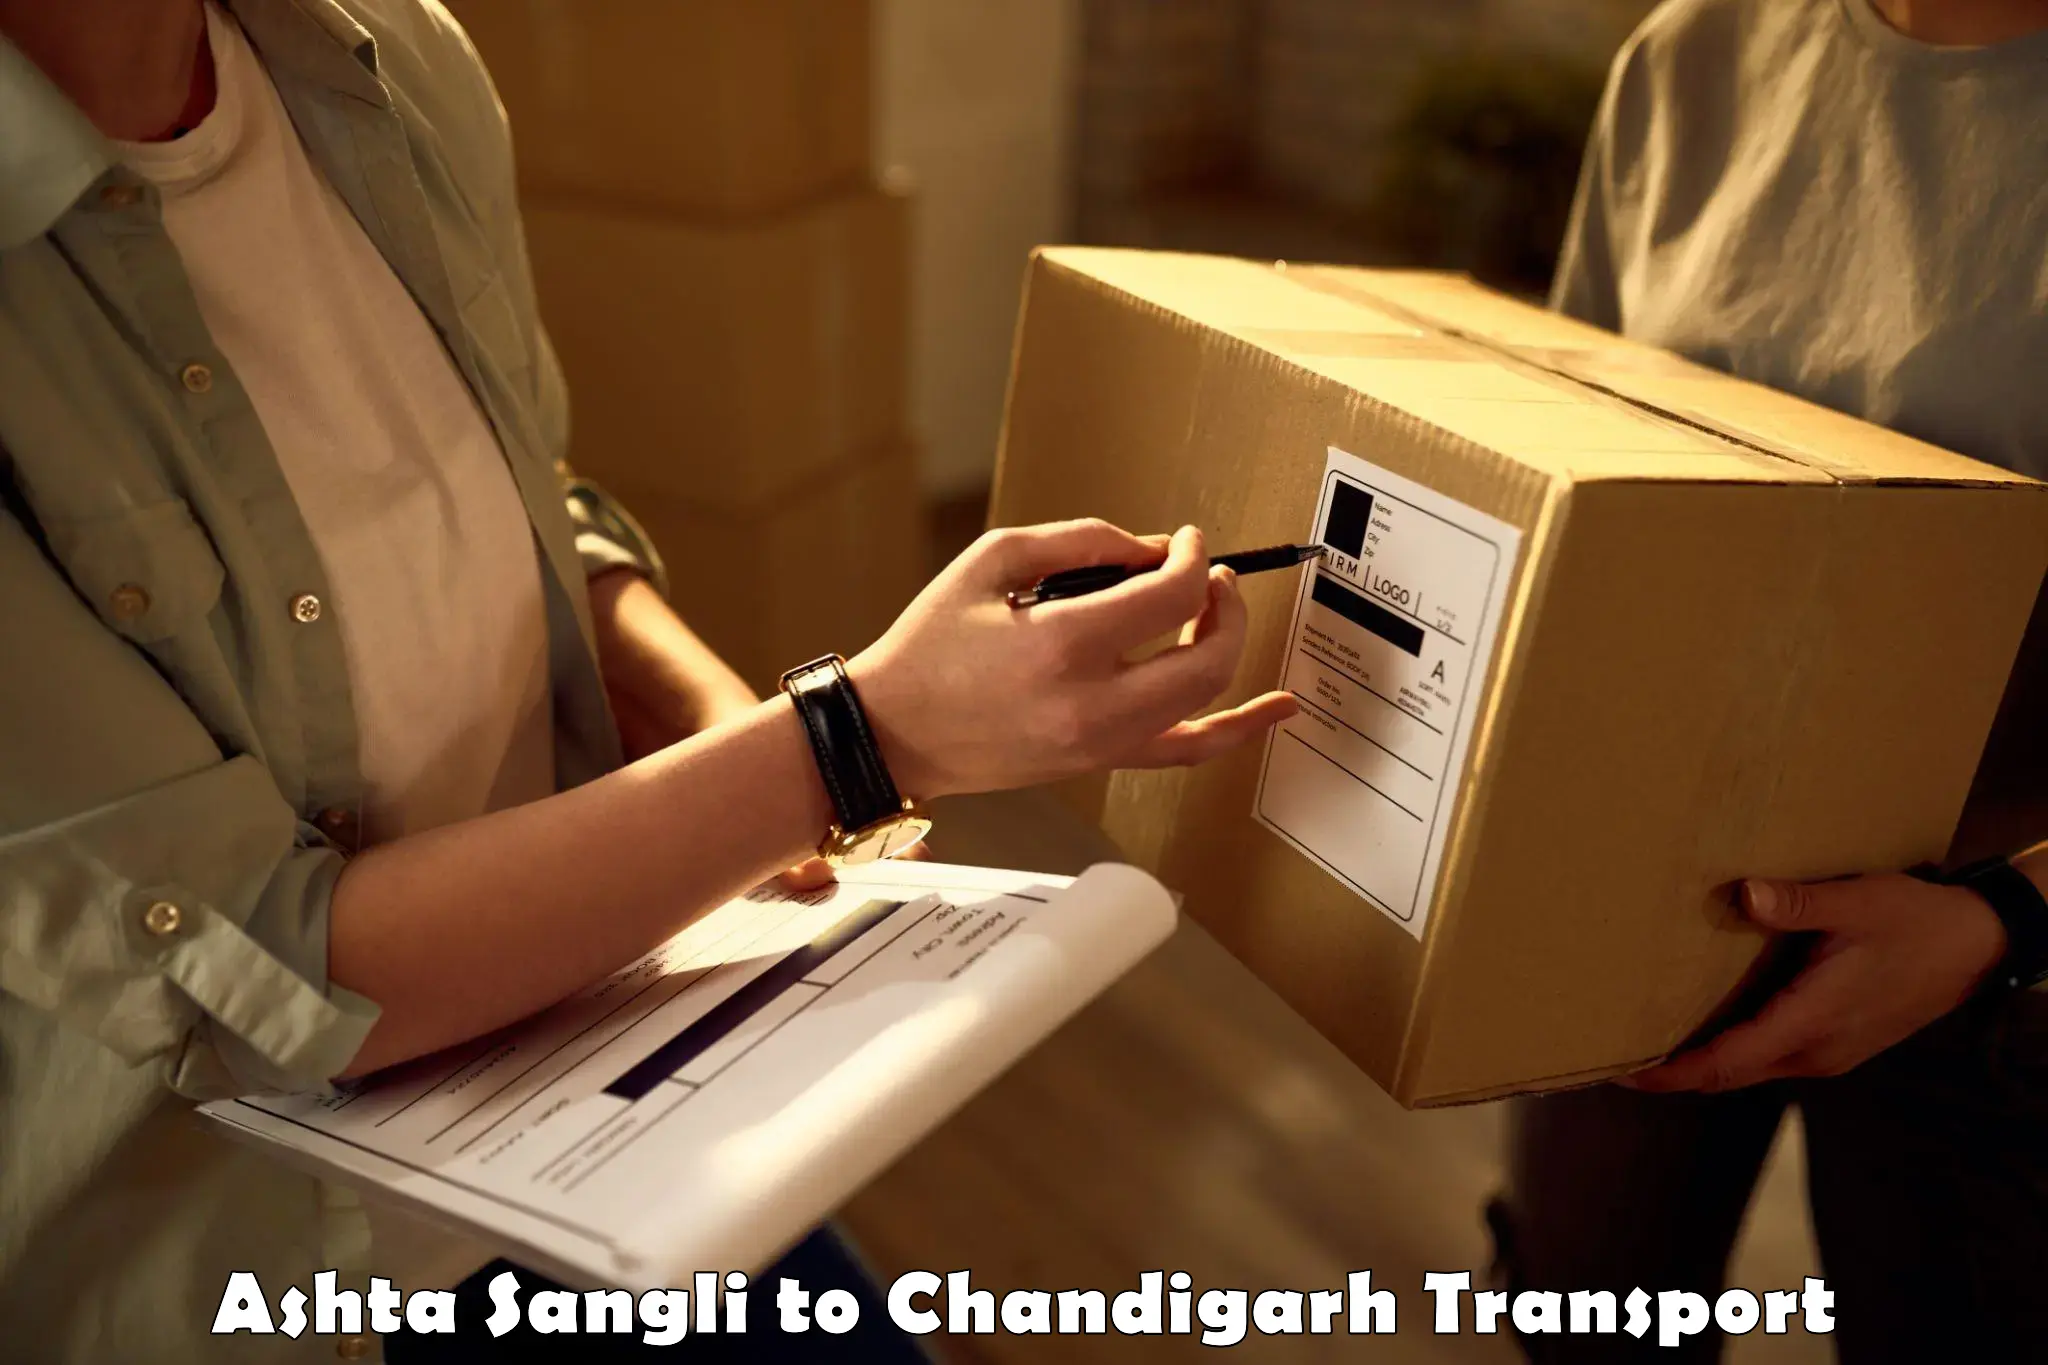 Delivery service Ashta Sangli to Chandigarh